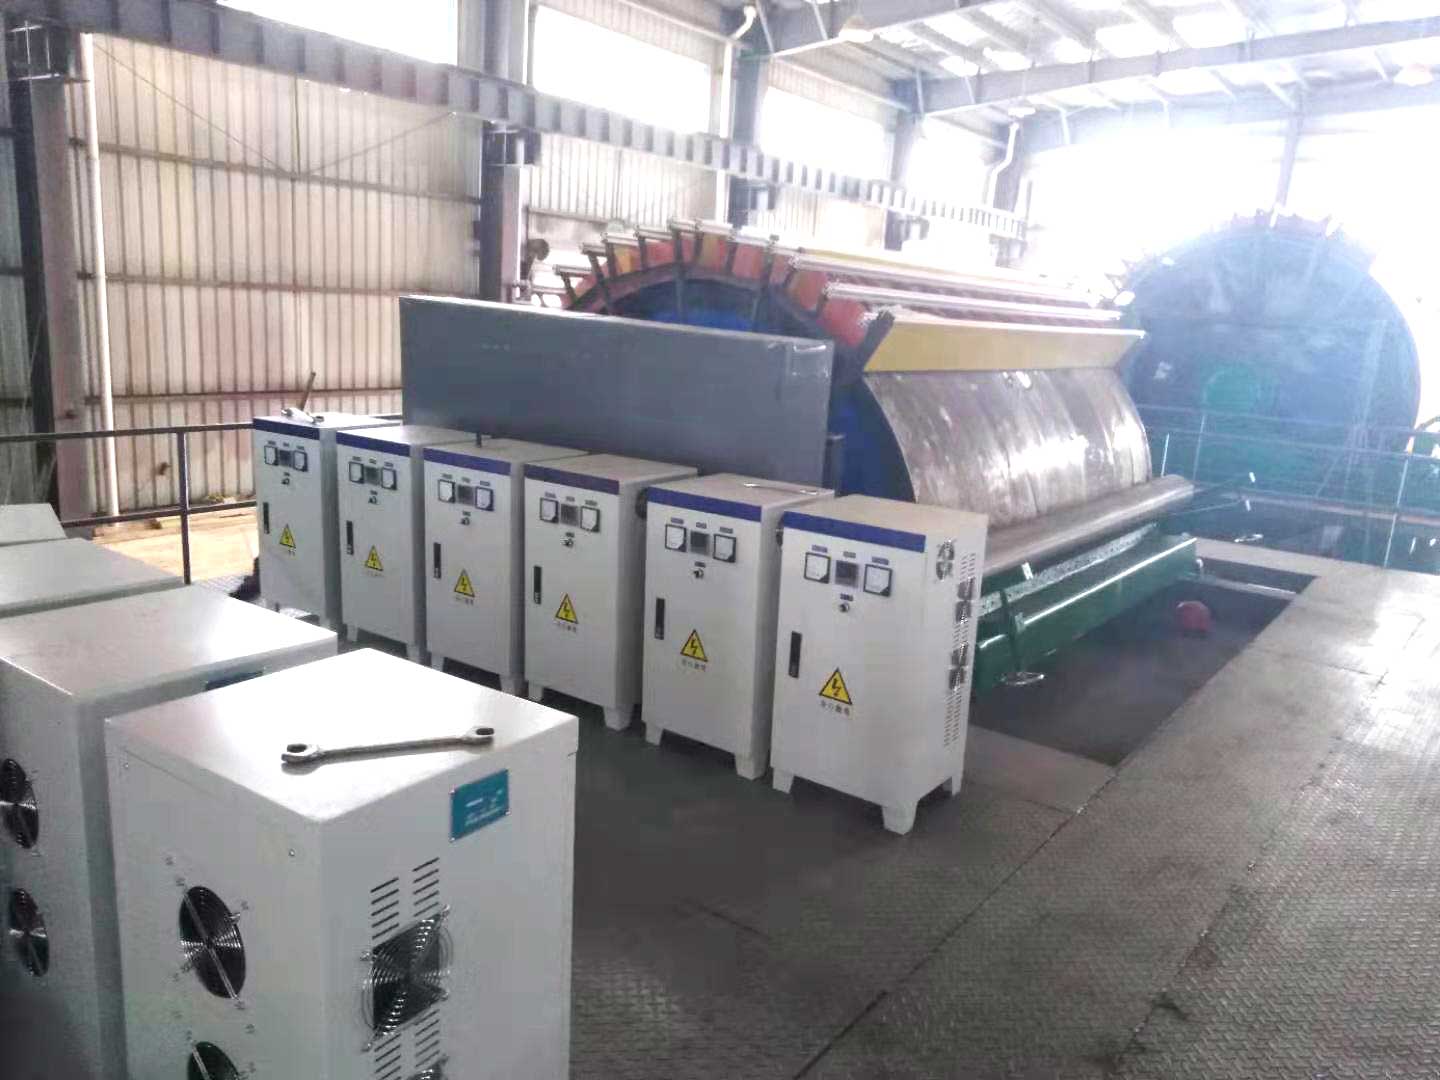 澳门太阳集团6138电磁加热器在青川造纸厂上的应用